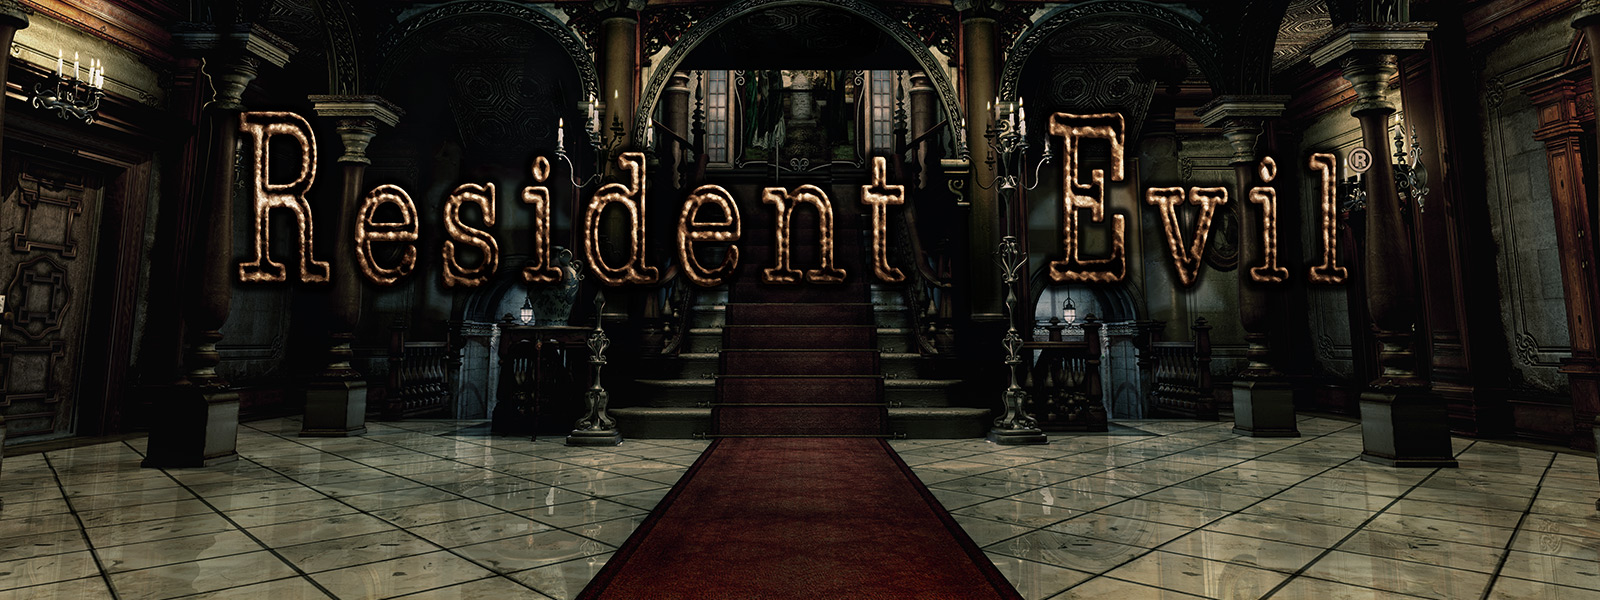 Resident Evil, escena de una gran entrada en arco con escaleras tapizadas de rojo